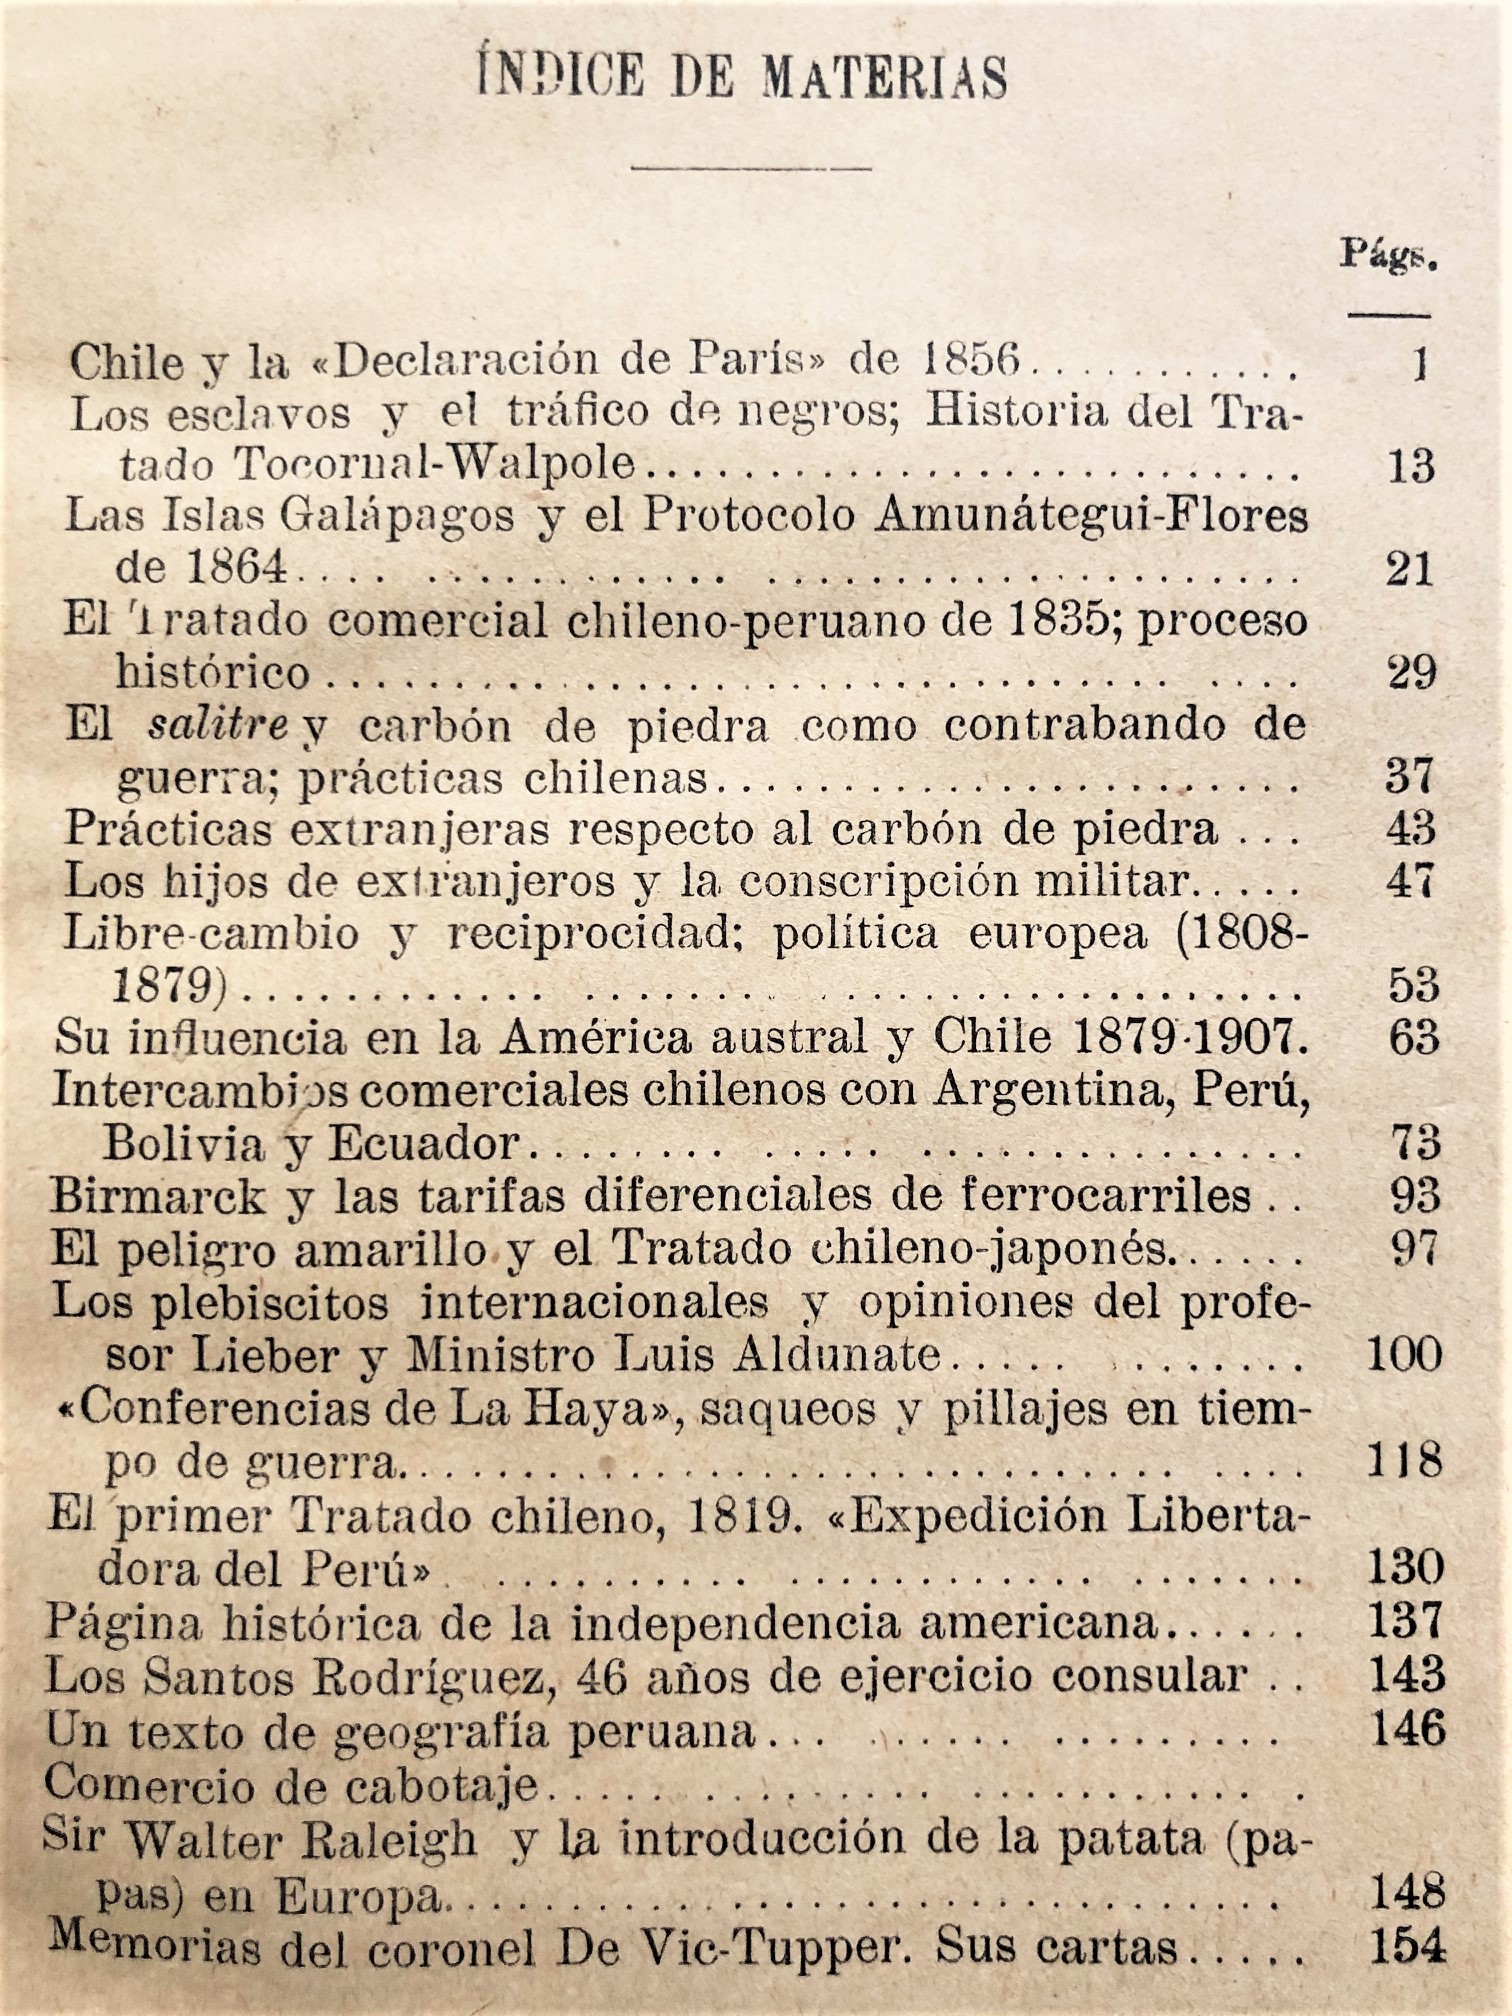 Aurelio Bascuñán Montes - Miscelánea Histórico-Diplomática y sobre intercambios comerciales chilenos